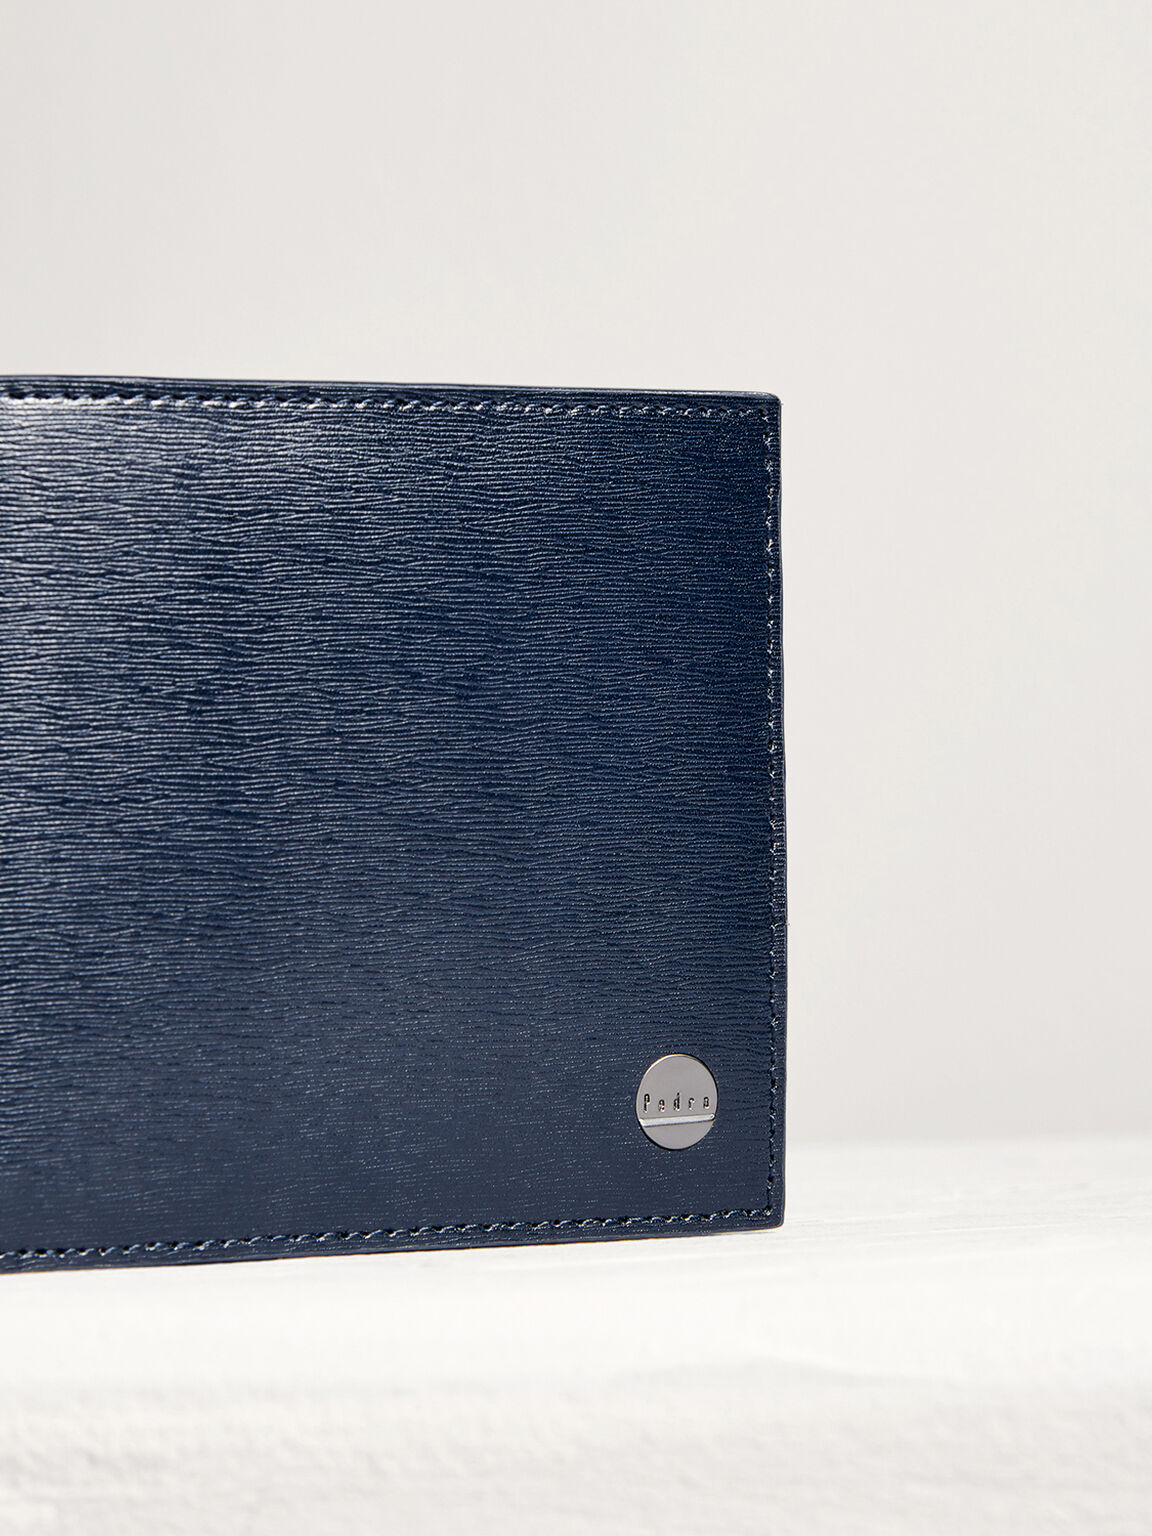 Leather Bi-Fold Flip Wallet in Two-Tone, Navy